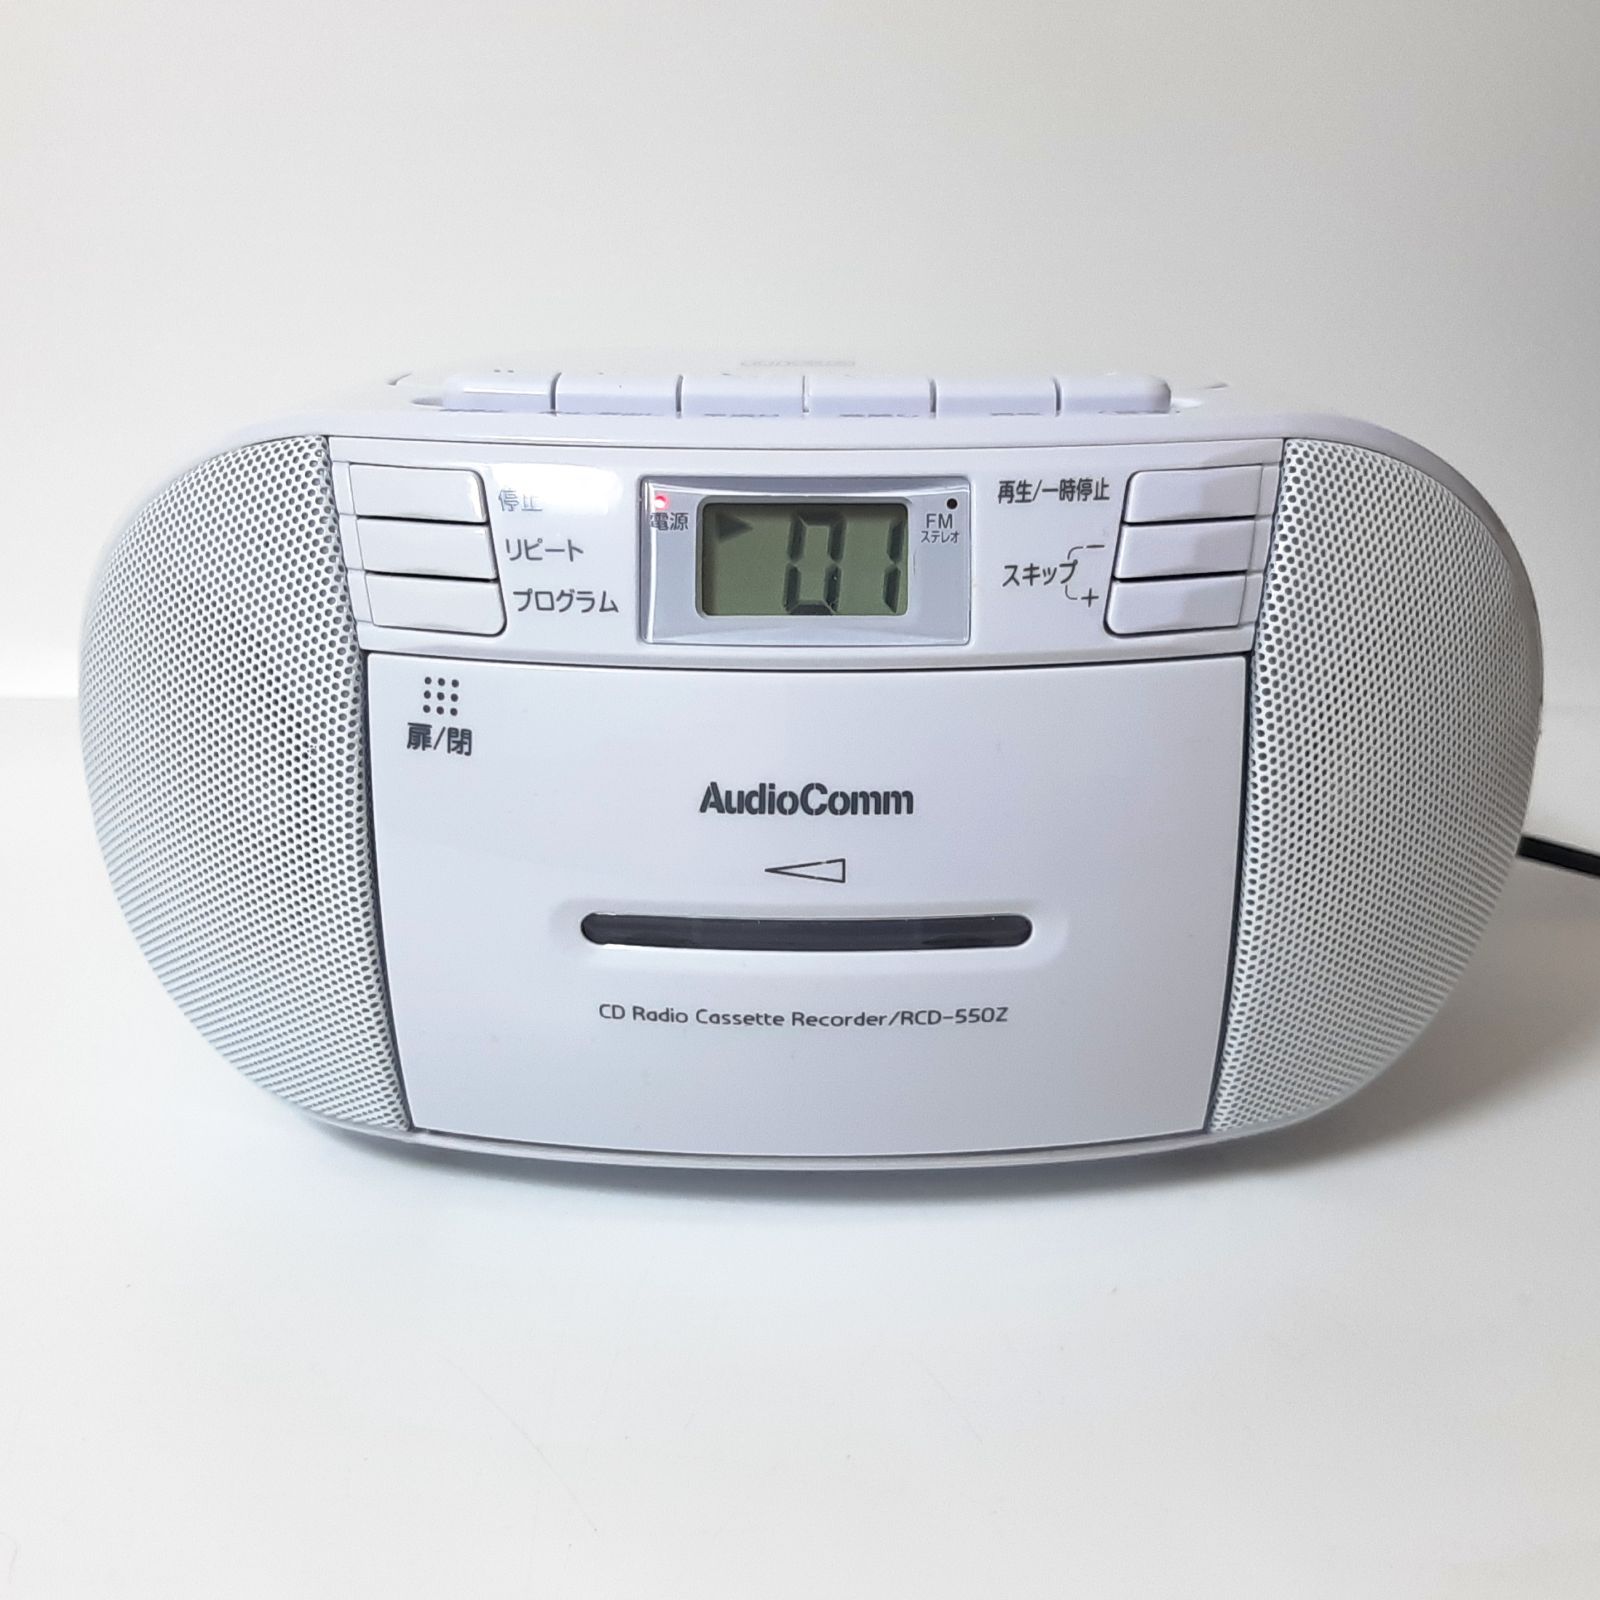 オーム電機 AudioComm CDラジオカセットレコーダー ホワイト RCD-550Z